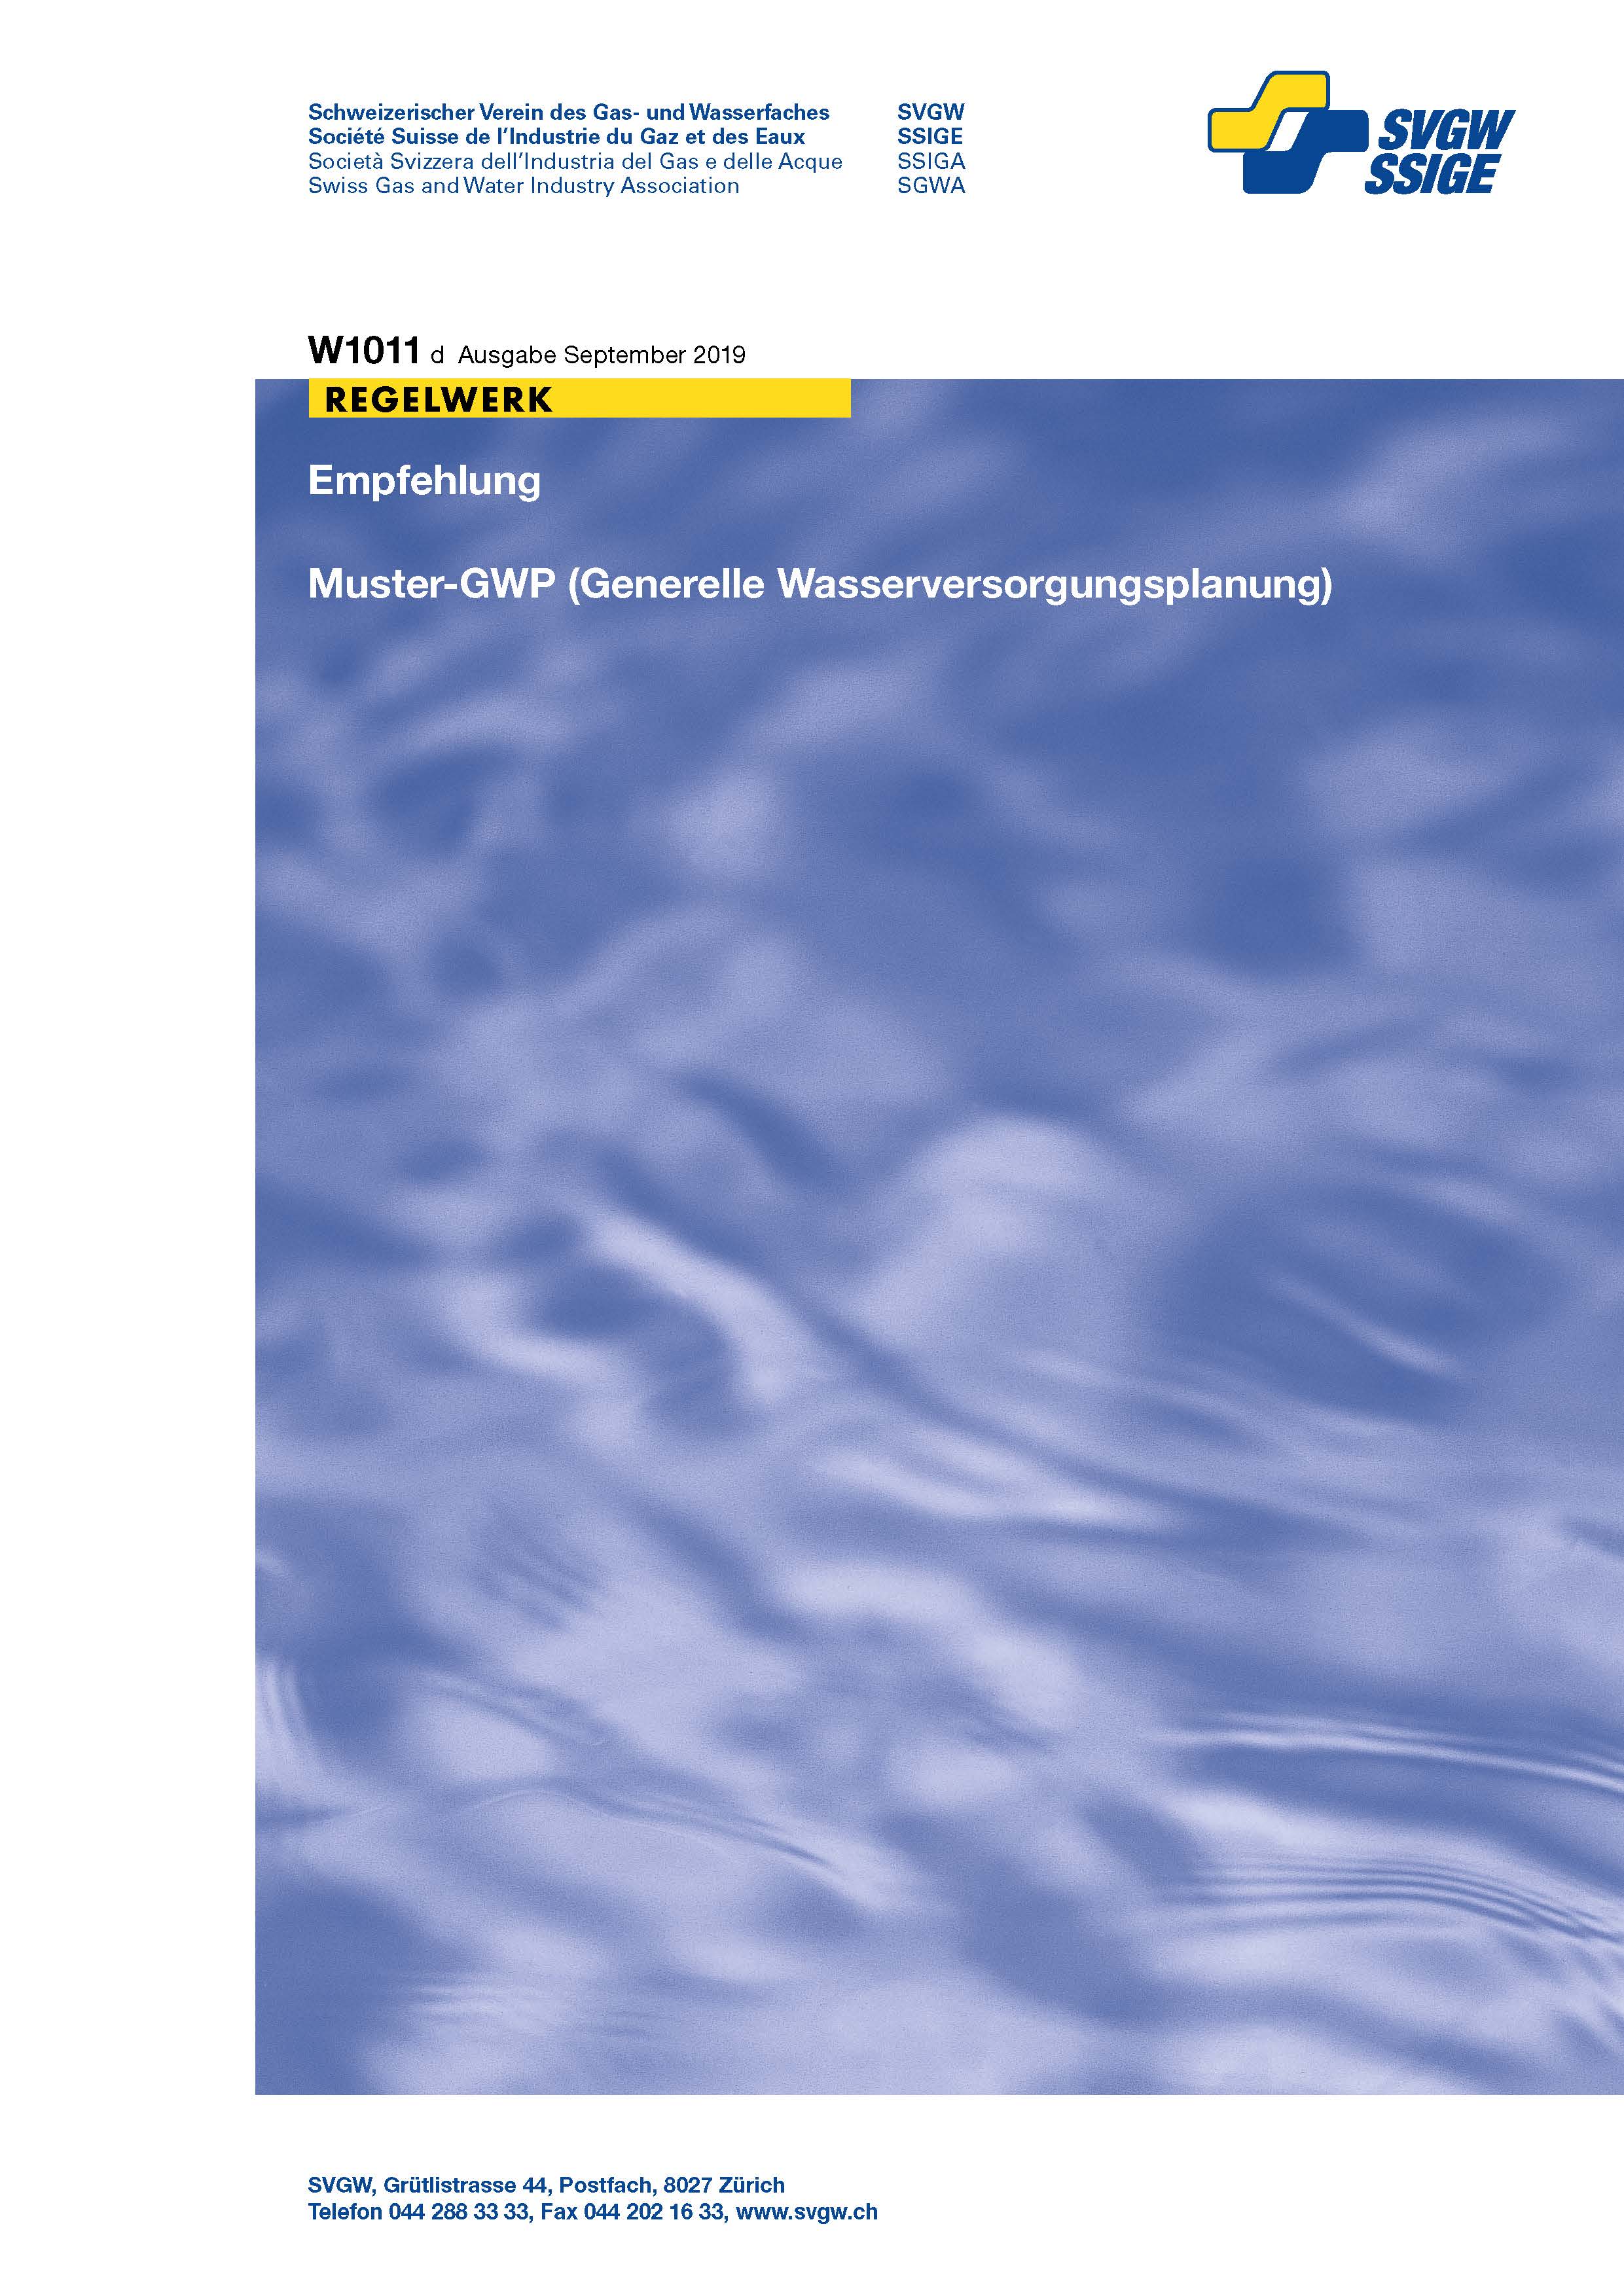 W1011 d Empfehlung; Muster-GWP (Generelle Wasserversorgungsplanung) (2)